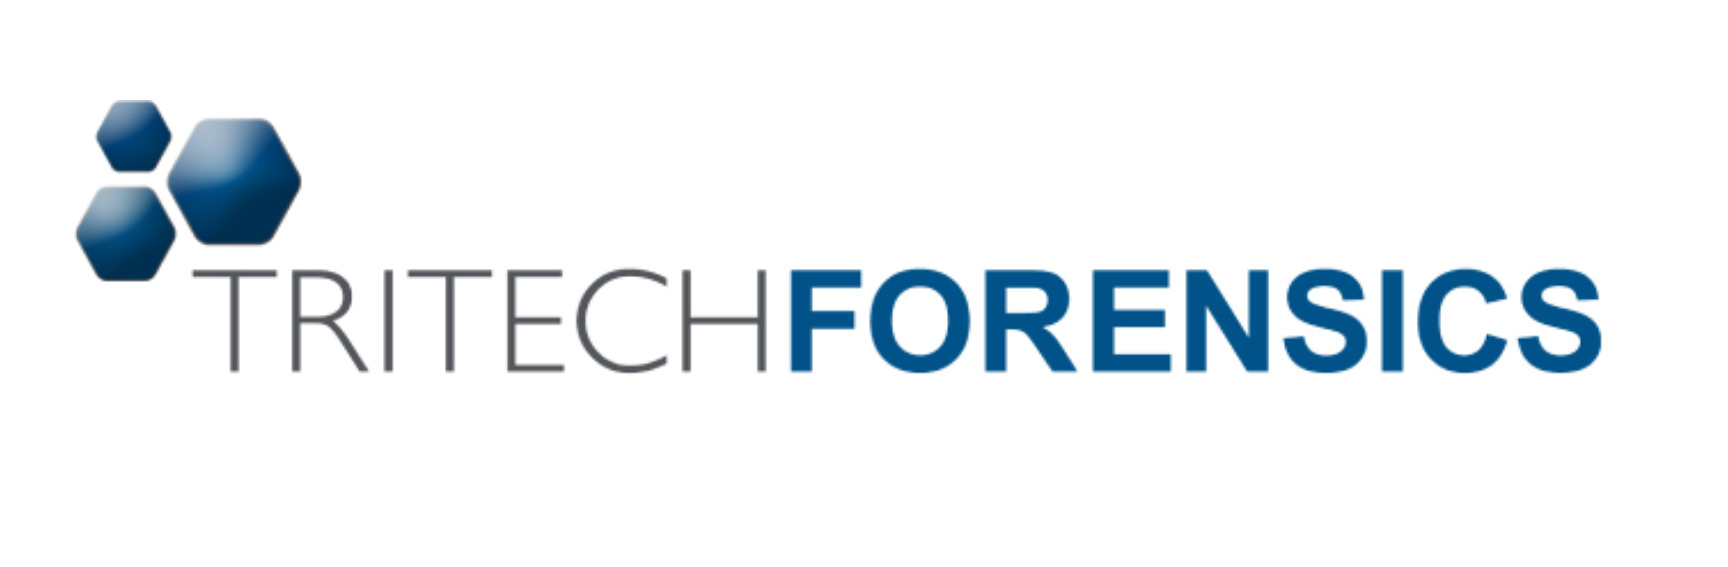 Tri-Tech Forensics Logo